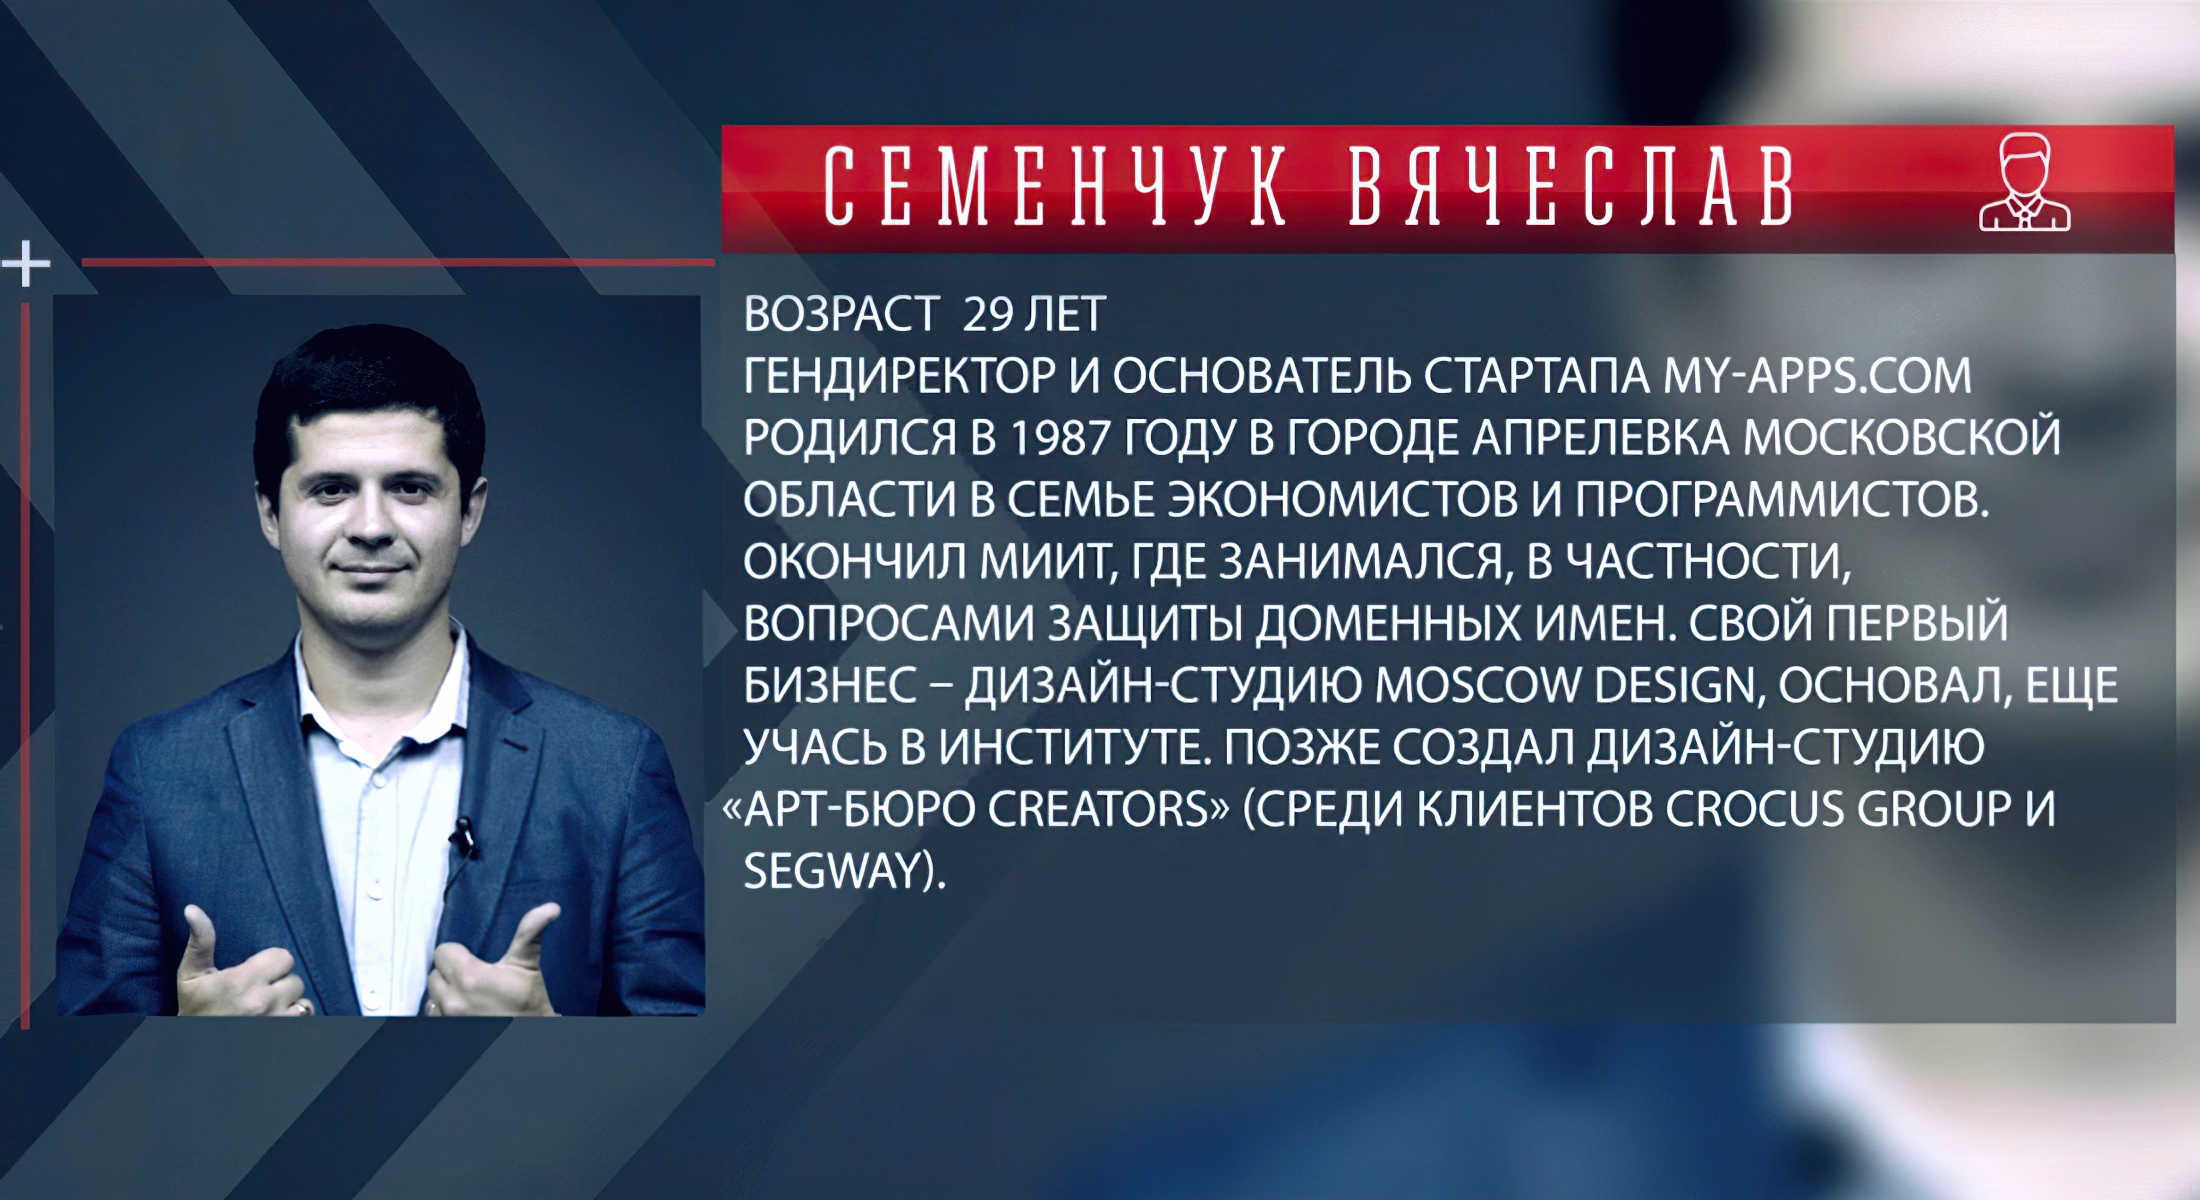 Вячеслав Семенчук - серийный предприниматель и стартап-хирур